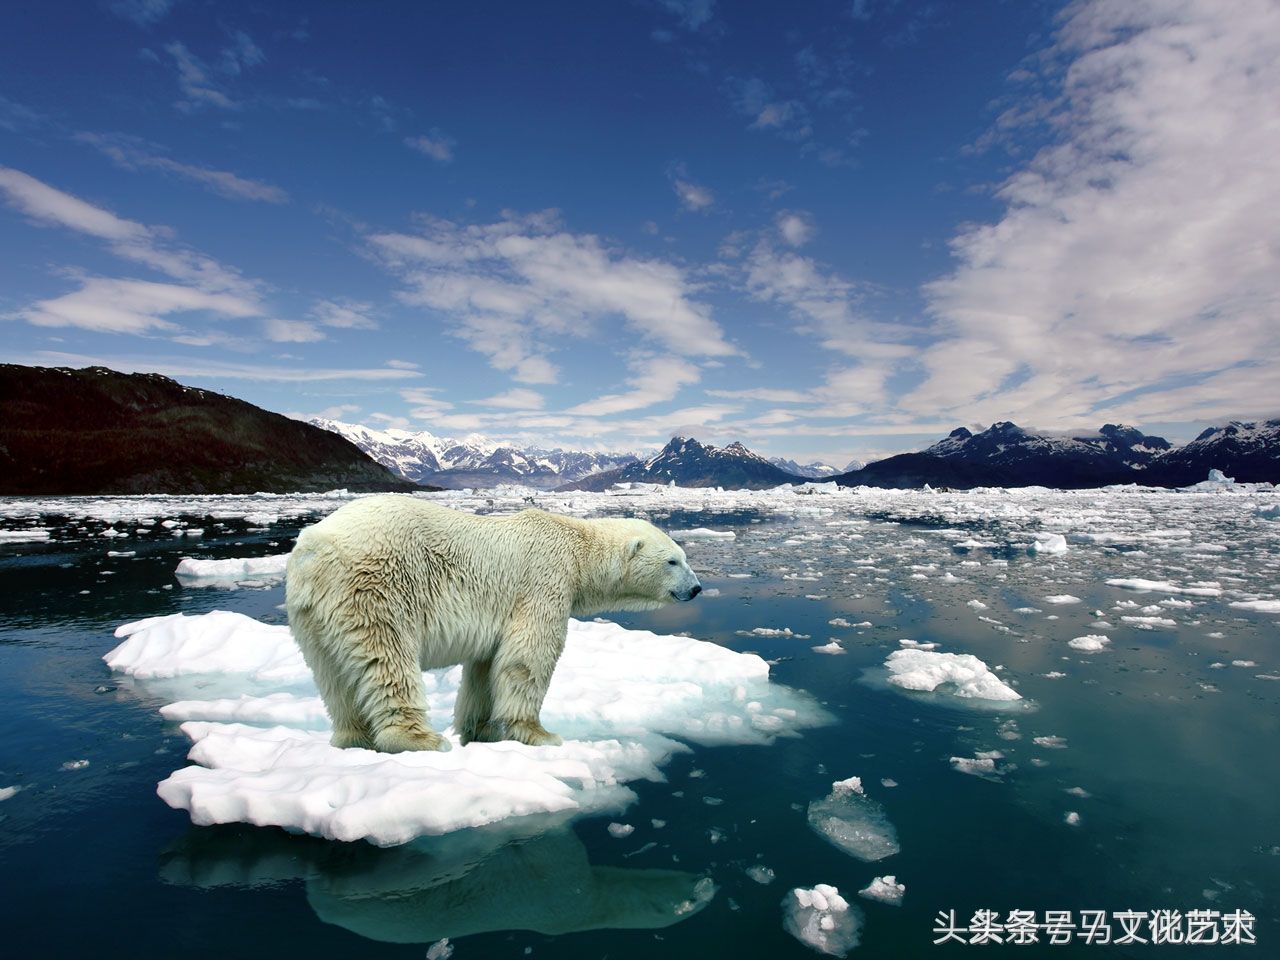 无论是人和动物都受到了地球变暖的影响,尤其是在两极的动物,生活环境